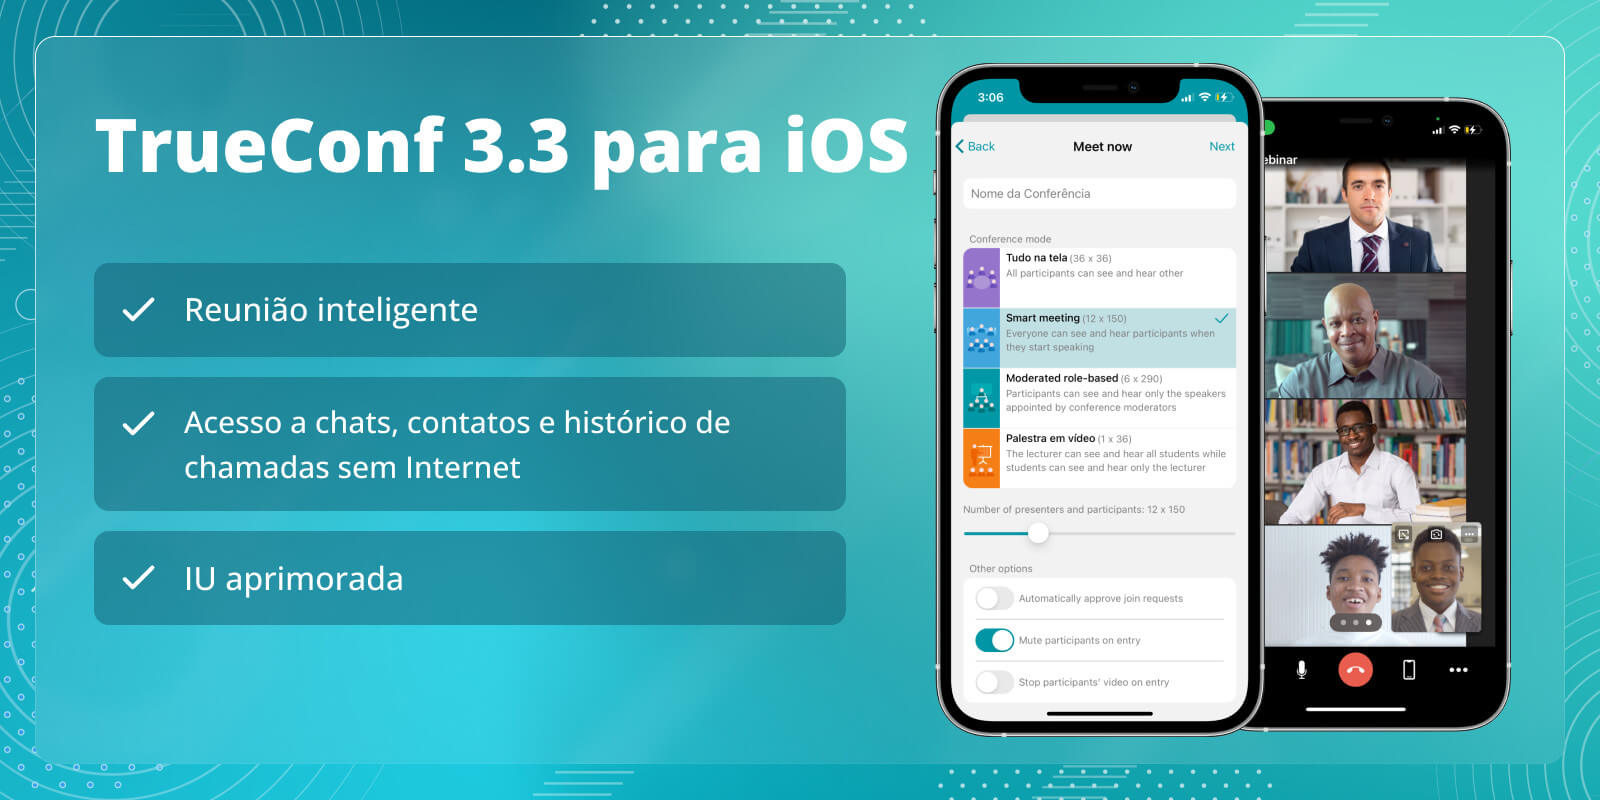 TrueConf 3.3 para iOS: nova interface do usuário, modo de reunião inteligente, acesso offline a chats, contatos e histórico de chamadas 5